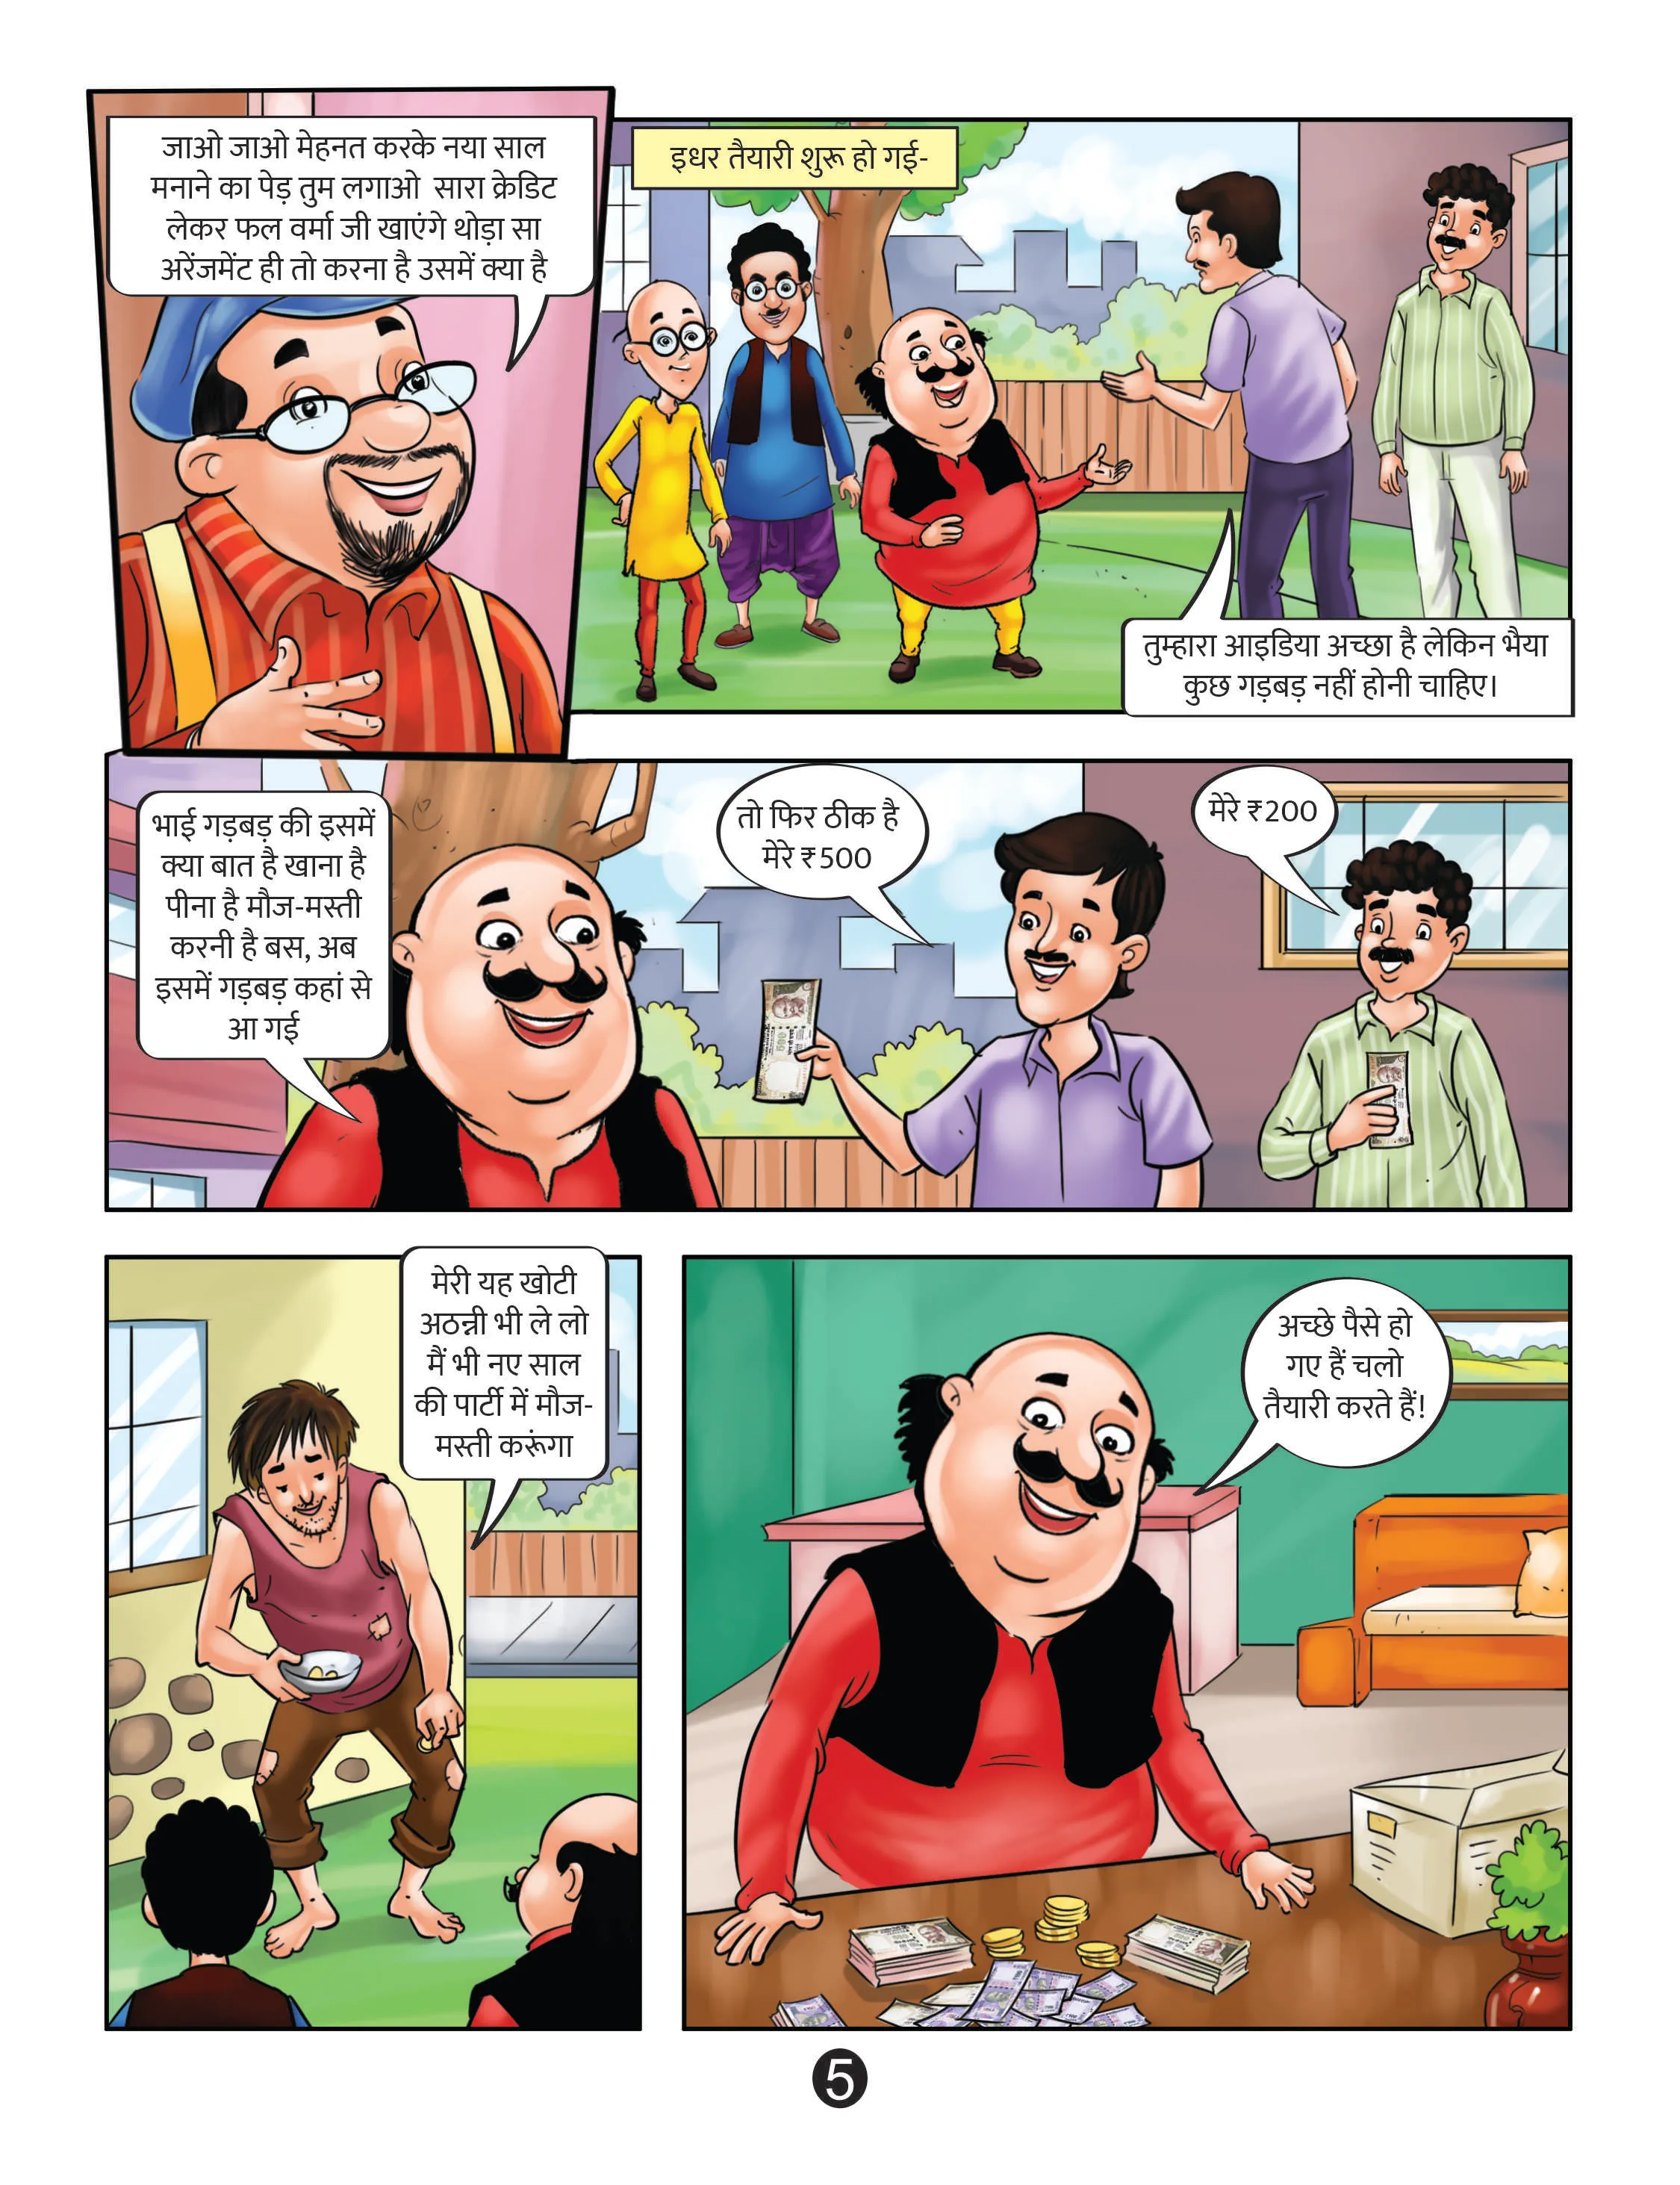 lotpot E-Comics Cartoon Character Motu Patlu Comics